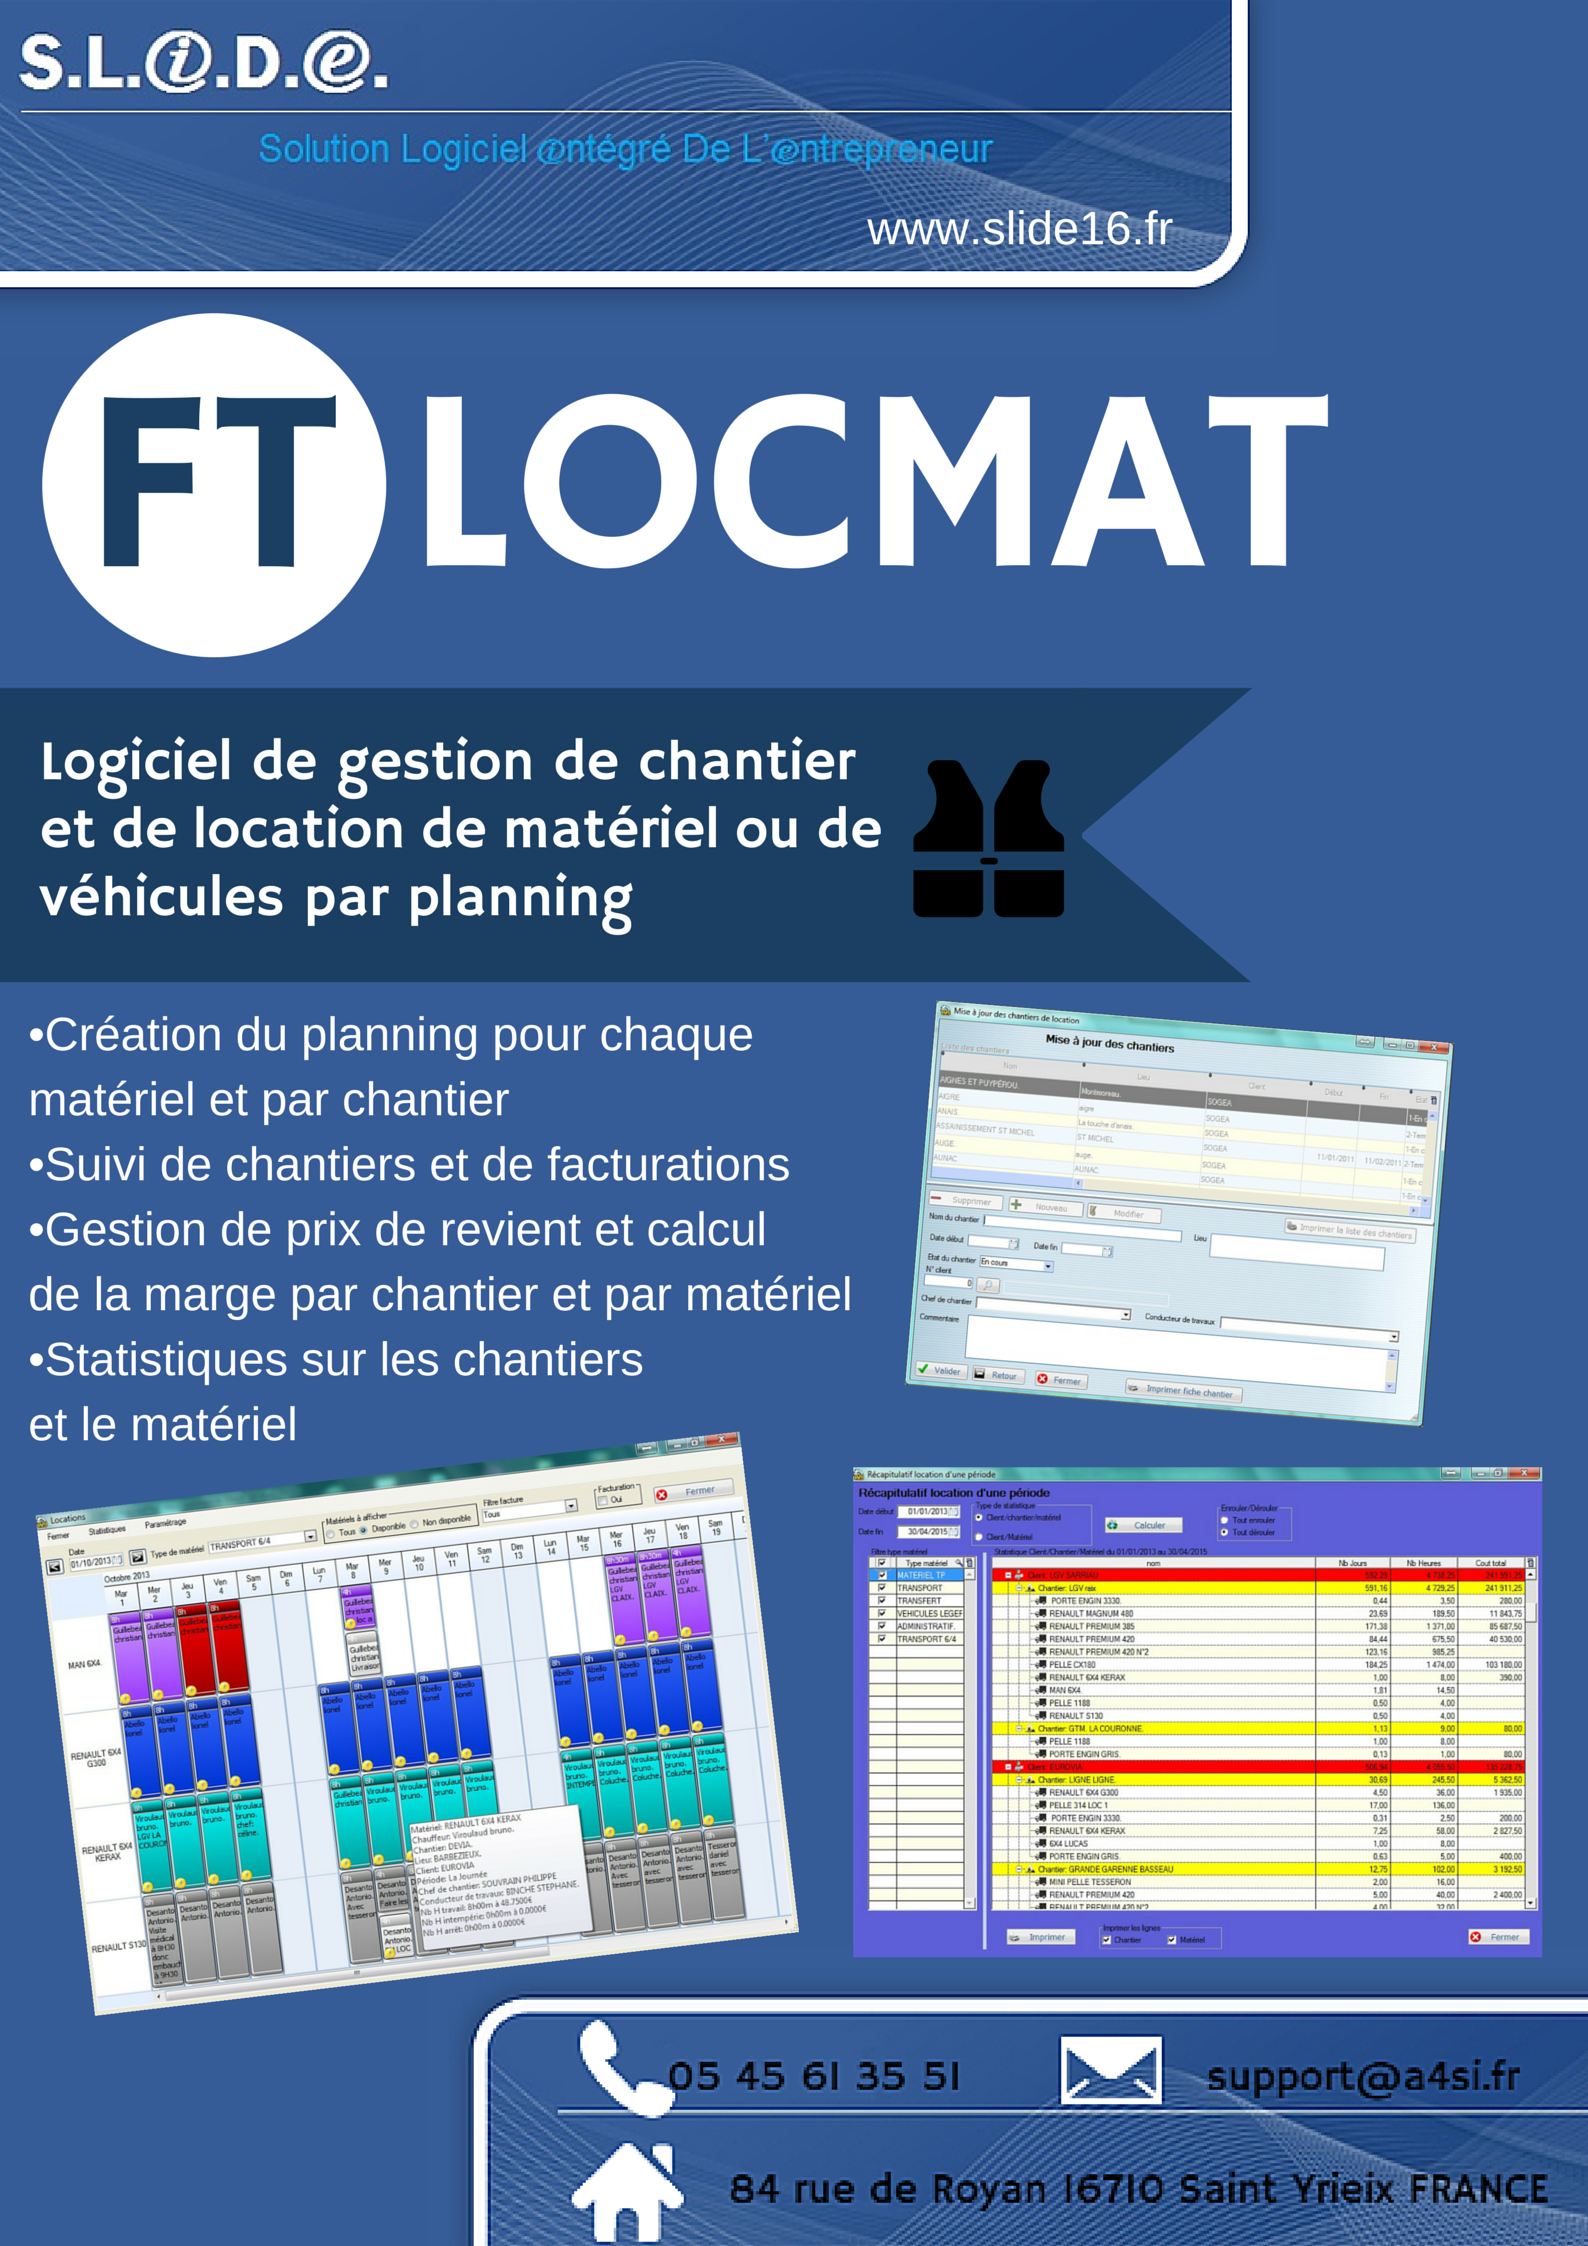 Logiciel de gestion de chantier et de location de matériel ou de véhicules par planning FTLOCMAT